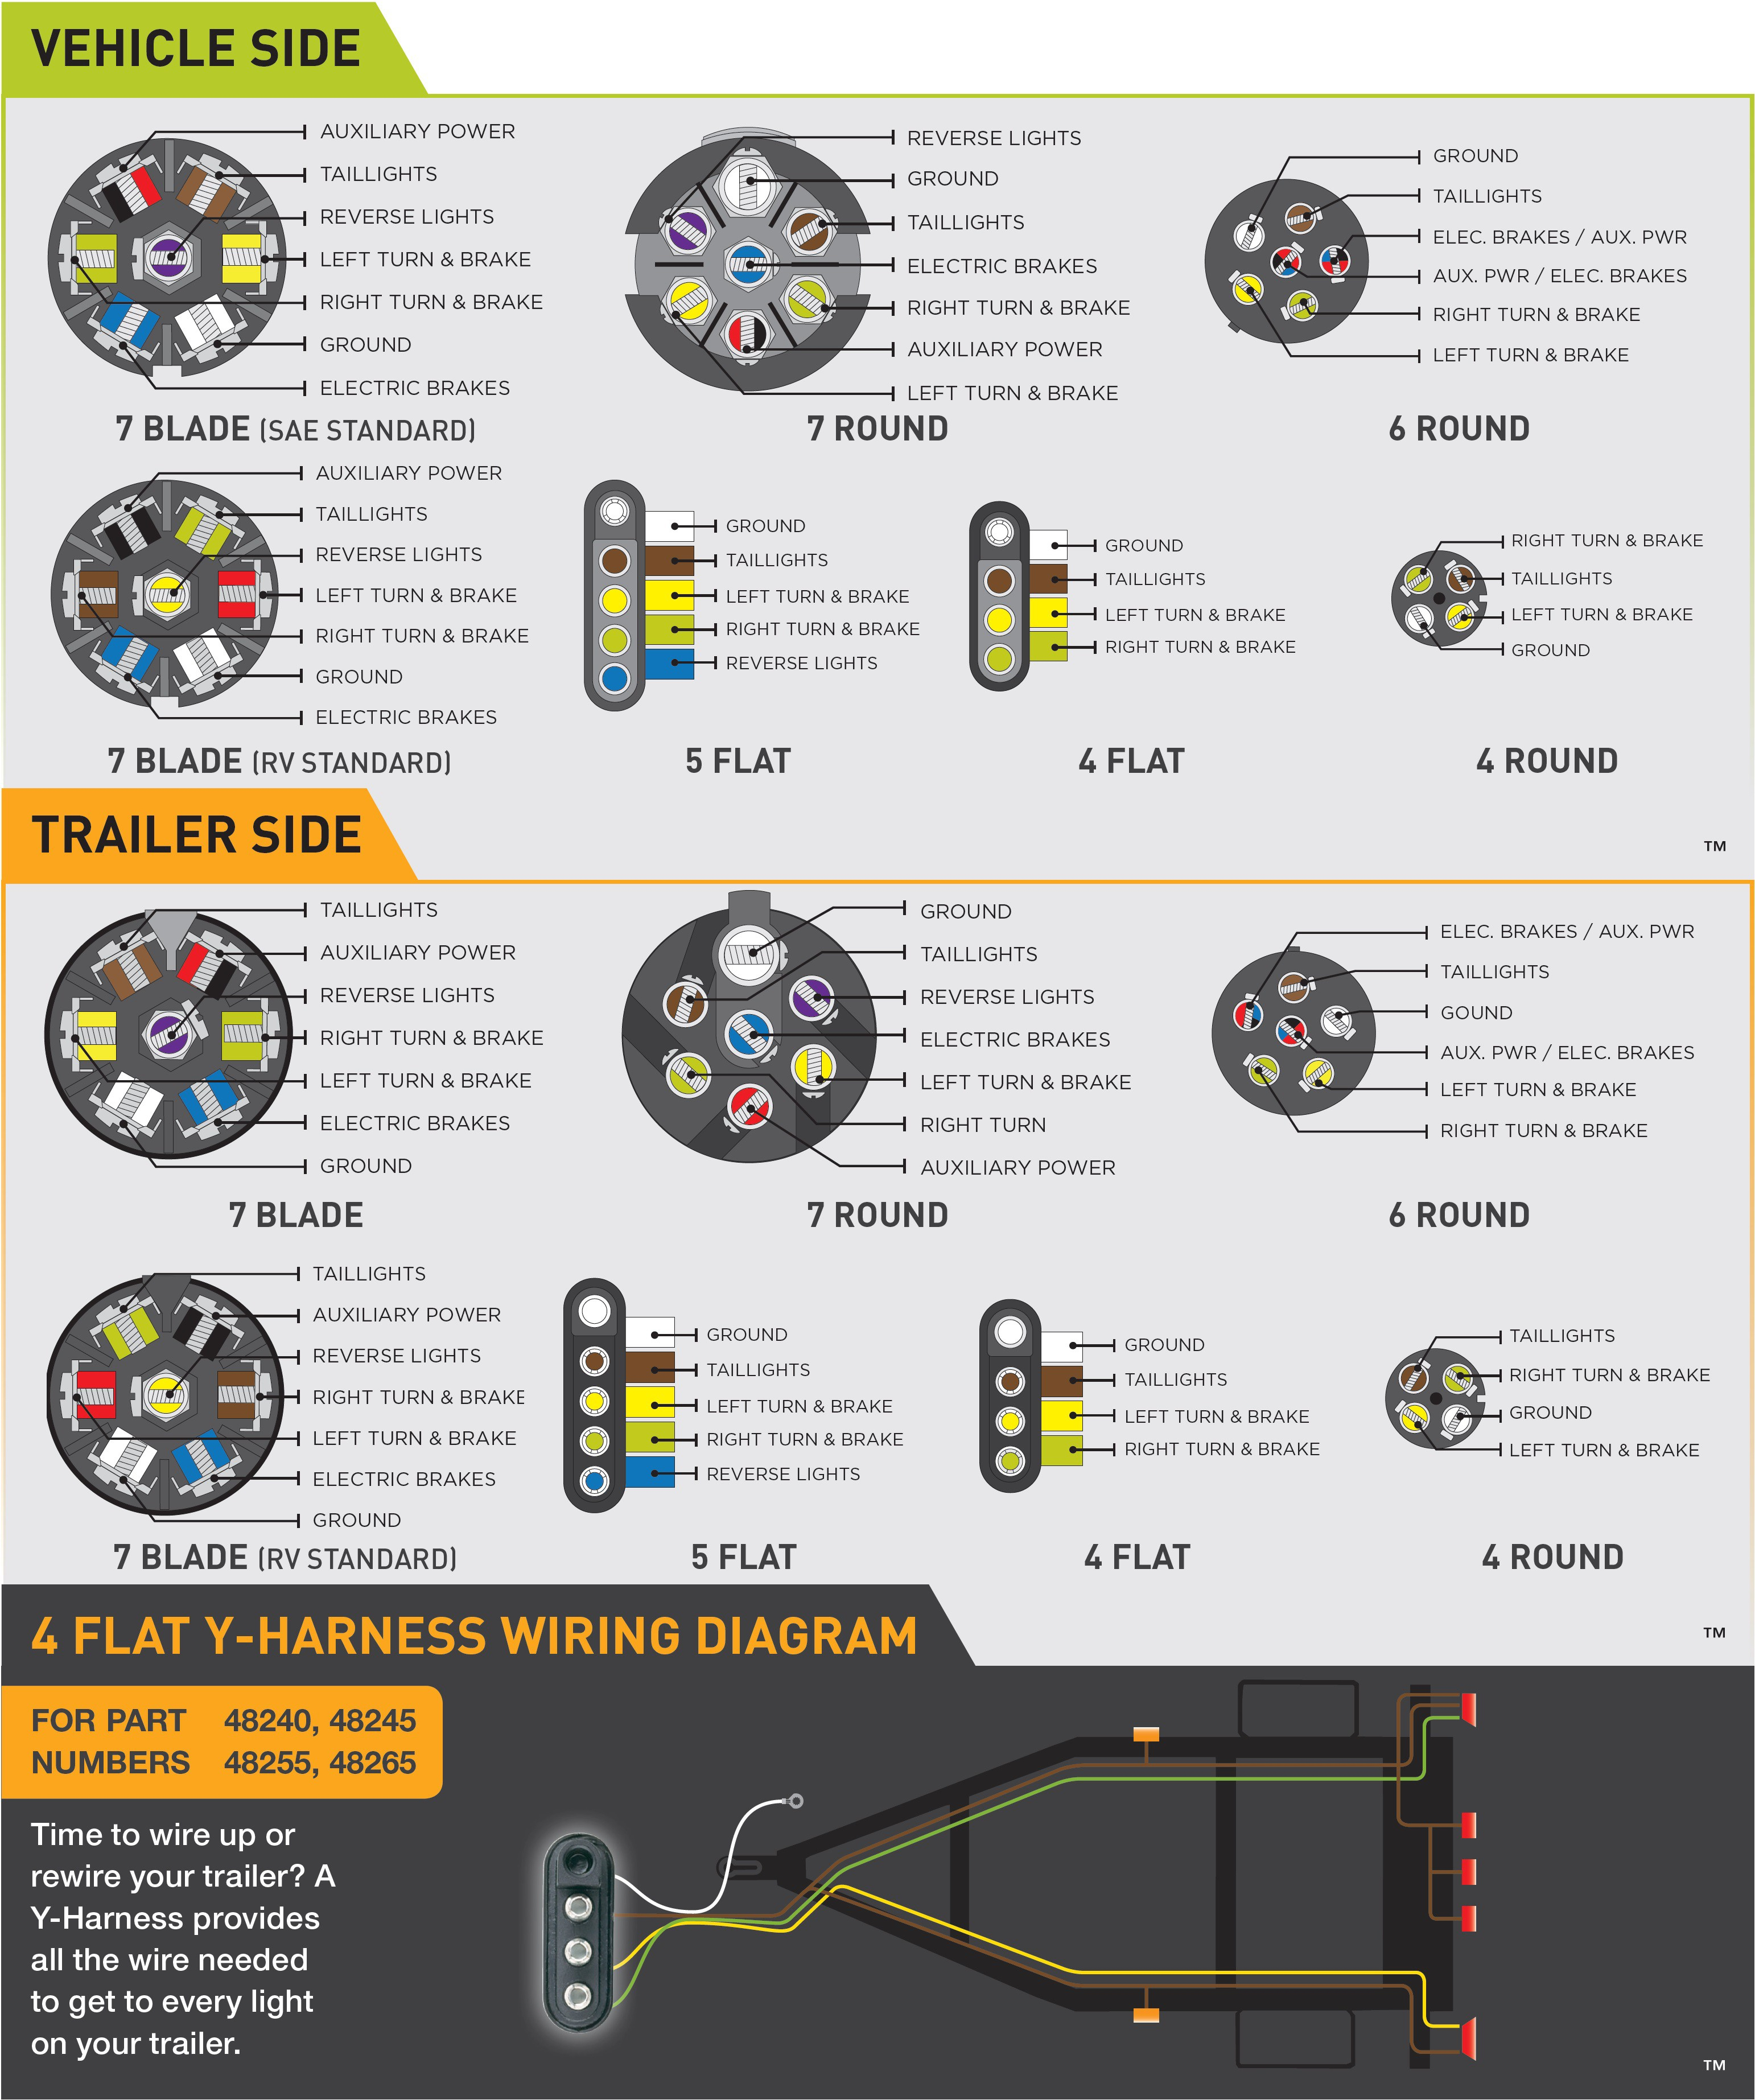 Wiring Diagram Ford Trailer Plug New 7 Way 3 | Hastalavista - Ford Trailer Wiring Diagram 7 Way